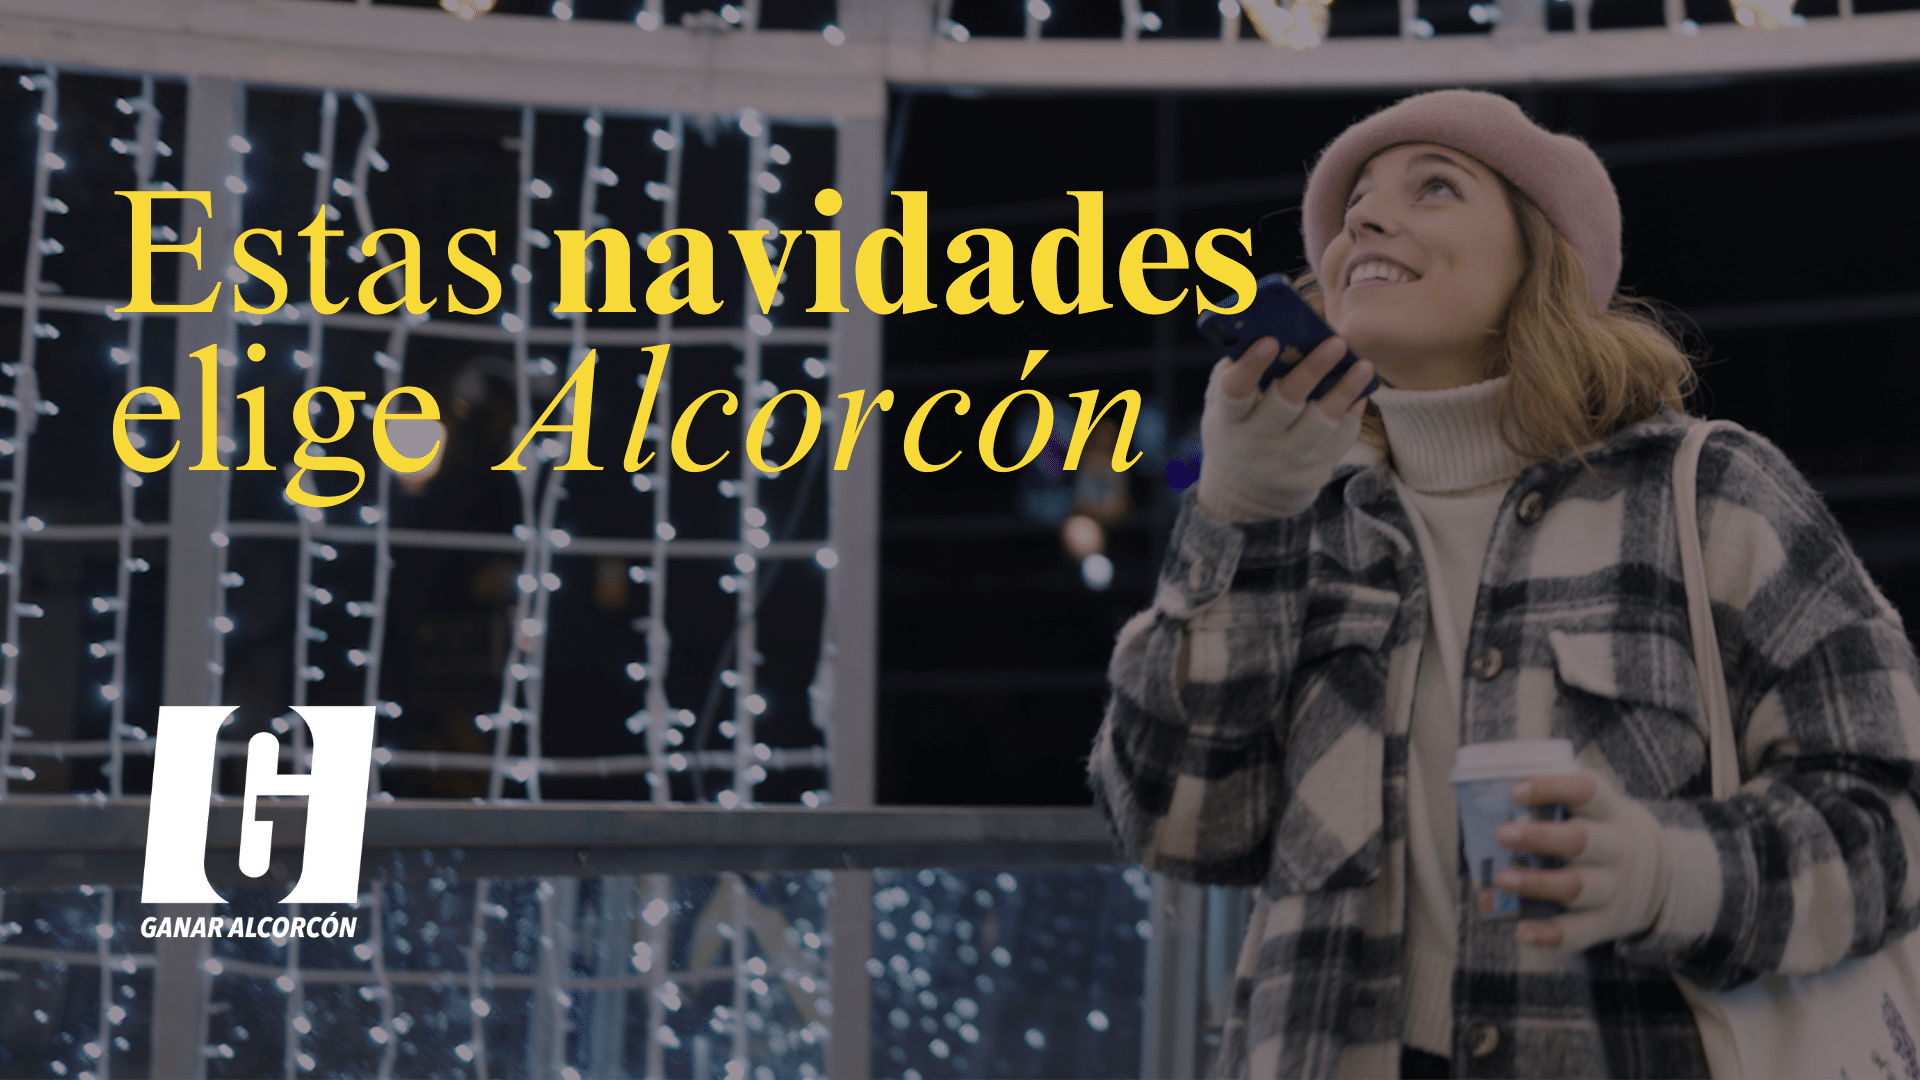 Ganar Alcorcón llama a elegir la ciudad como destino para celebrar las fiestas